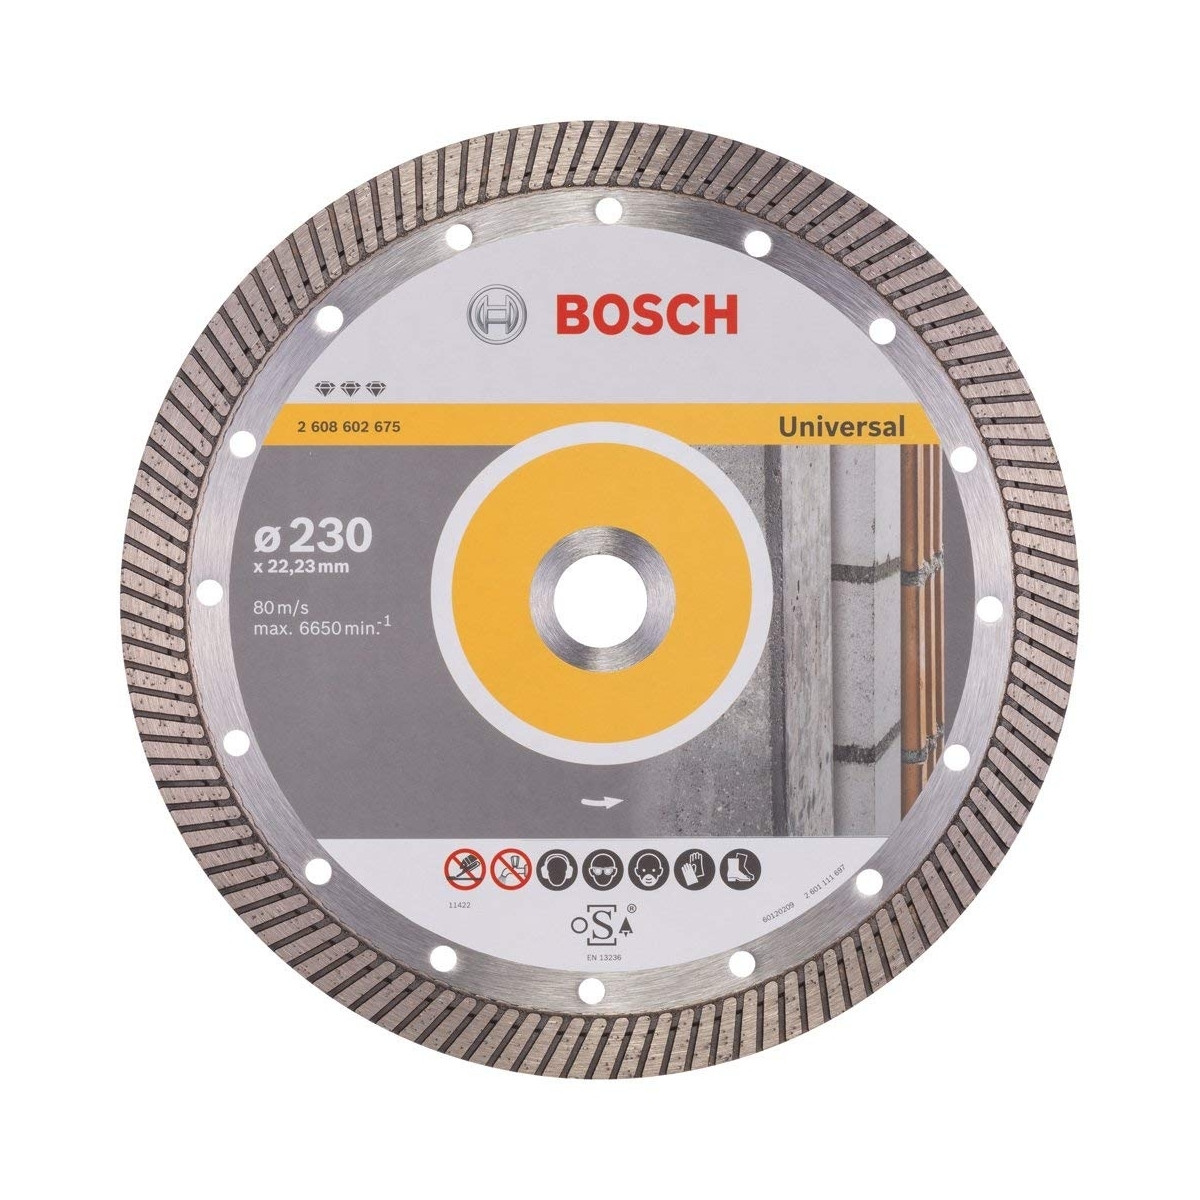 Disco diamantado universal Bosch Turbo 2608602675 - Comprar discos Bosch a bom preço.